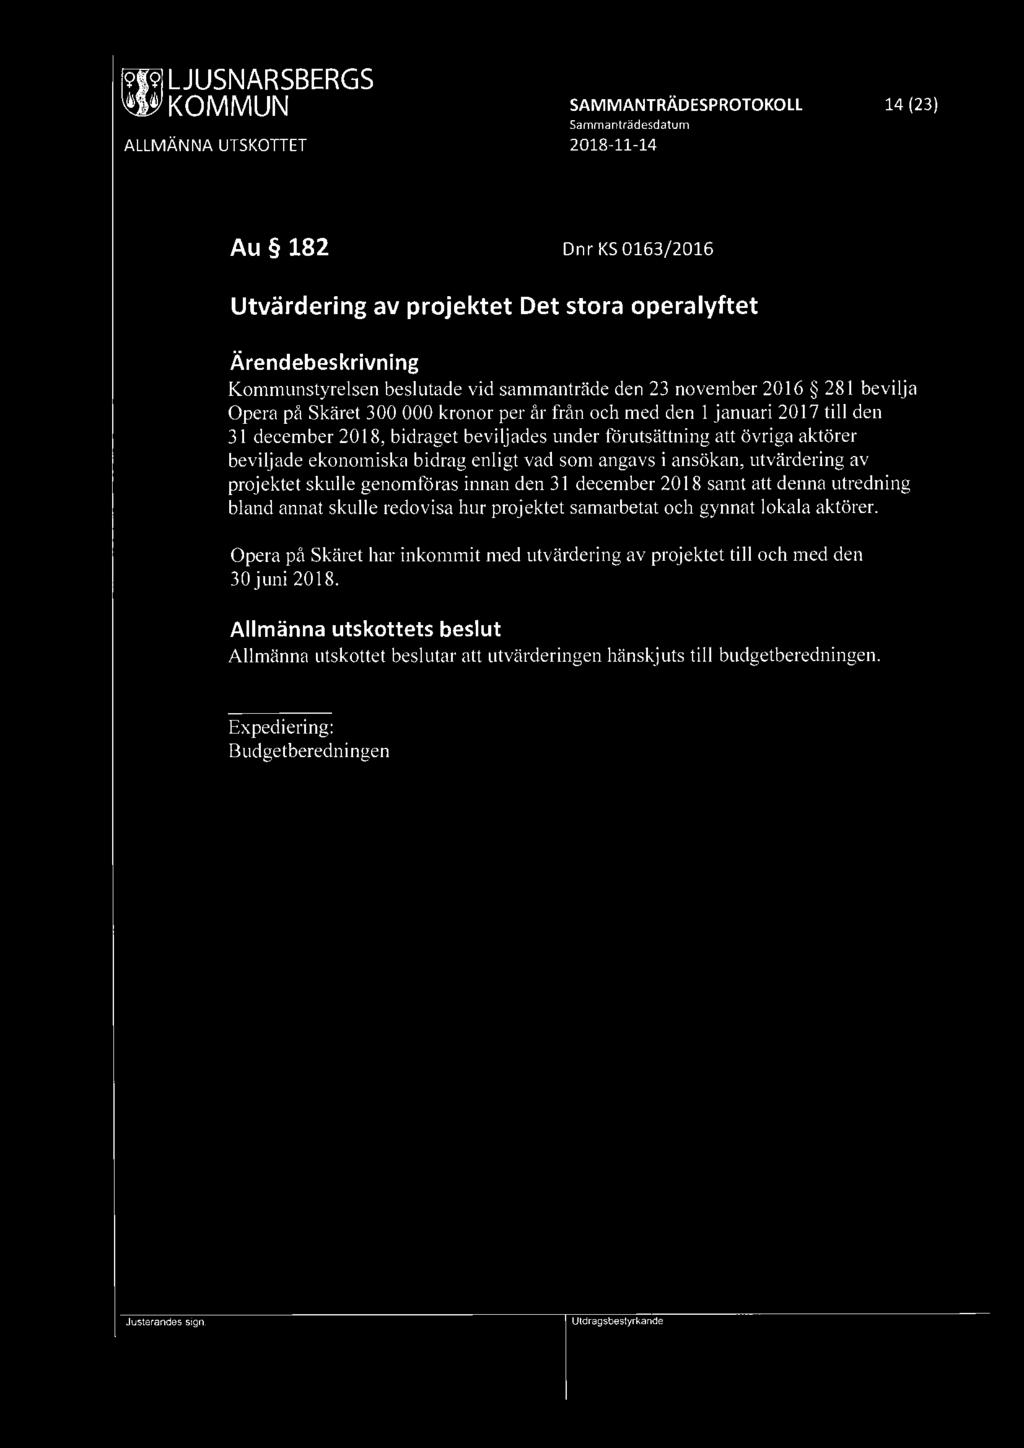 [9fl9] LJUSNARSBERGS ~ KOMMUN SAMMANTRÄDESPROTOKOLL 14 (23) Au 182 Dnr KS 0163/2016 Utvärdering av projektet Det stora operalyftet Kommunstyrelsen beslutade vid sammanträde den 23 november 20 I 6 281